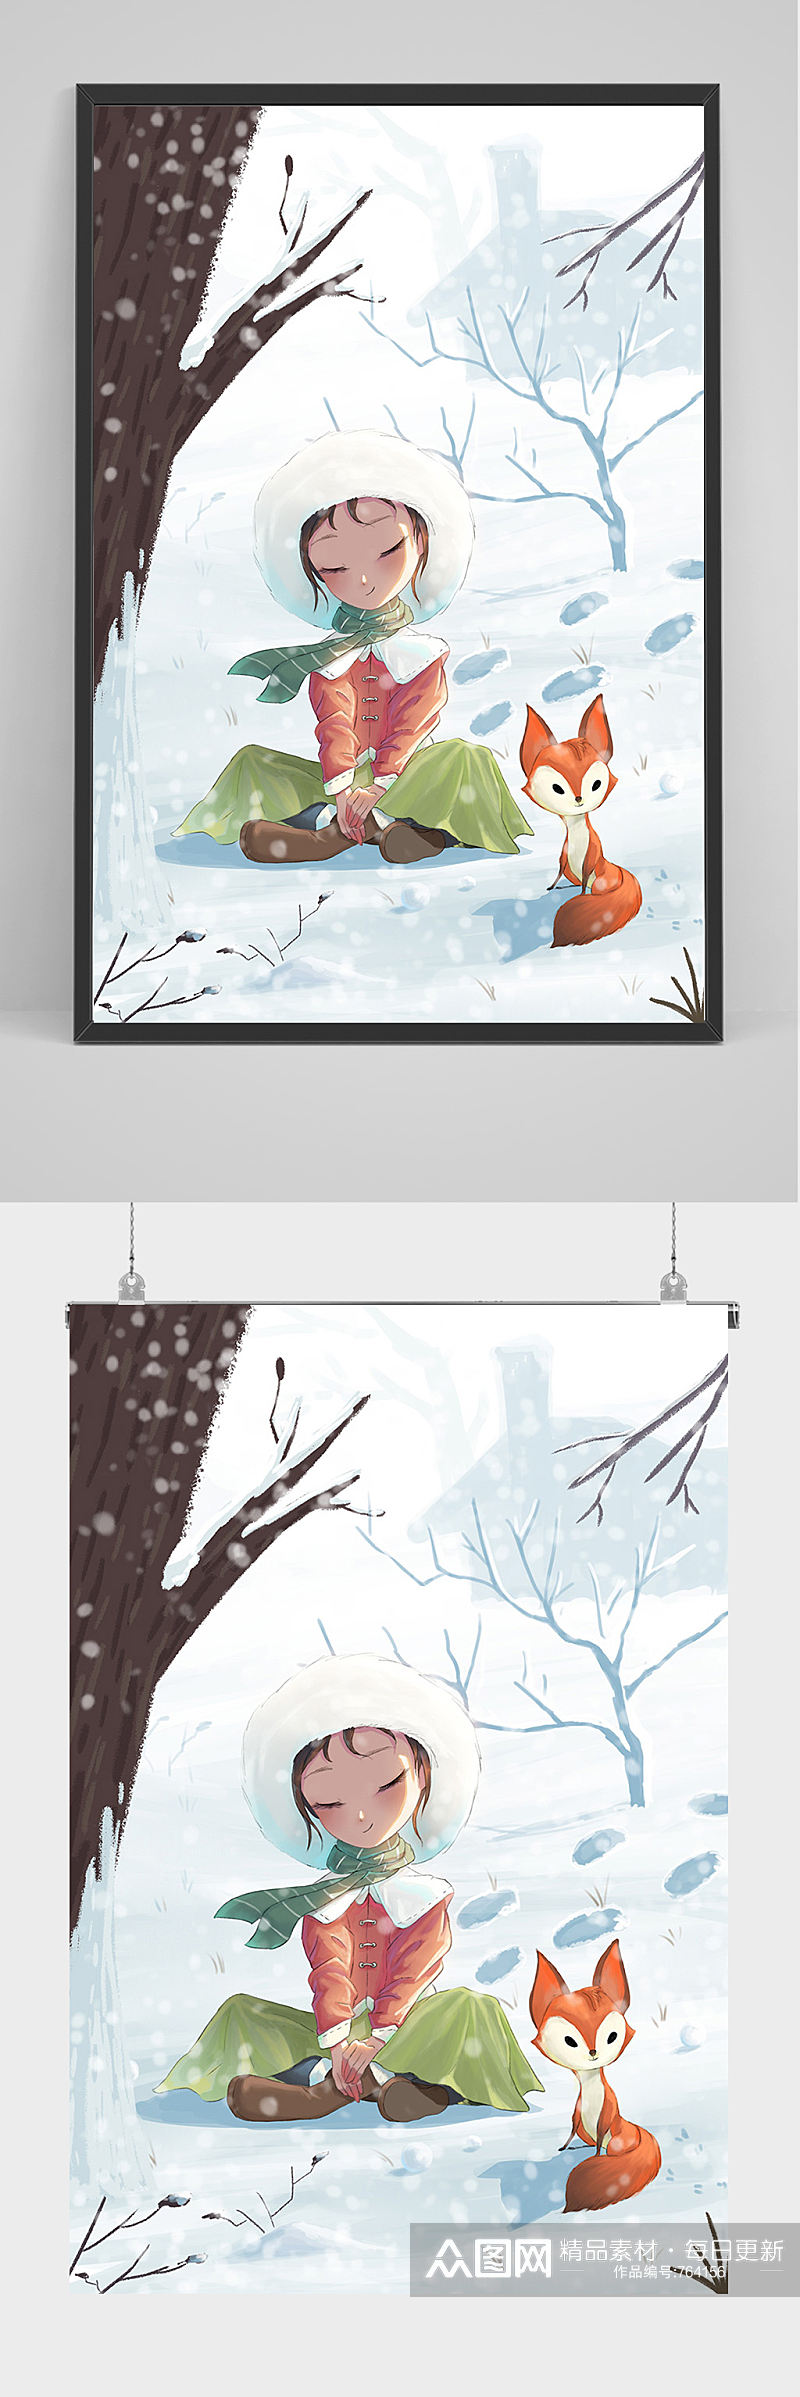 在雪地上的女孩和小狐狸插画设计素材